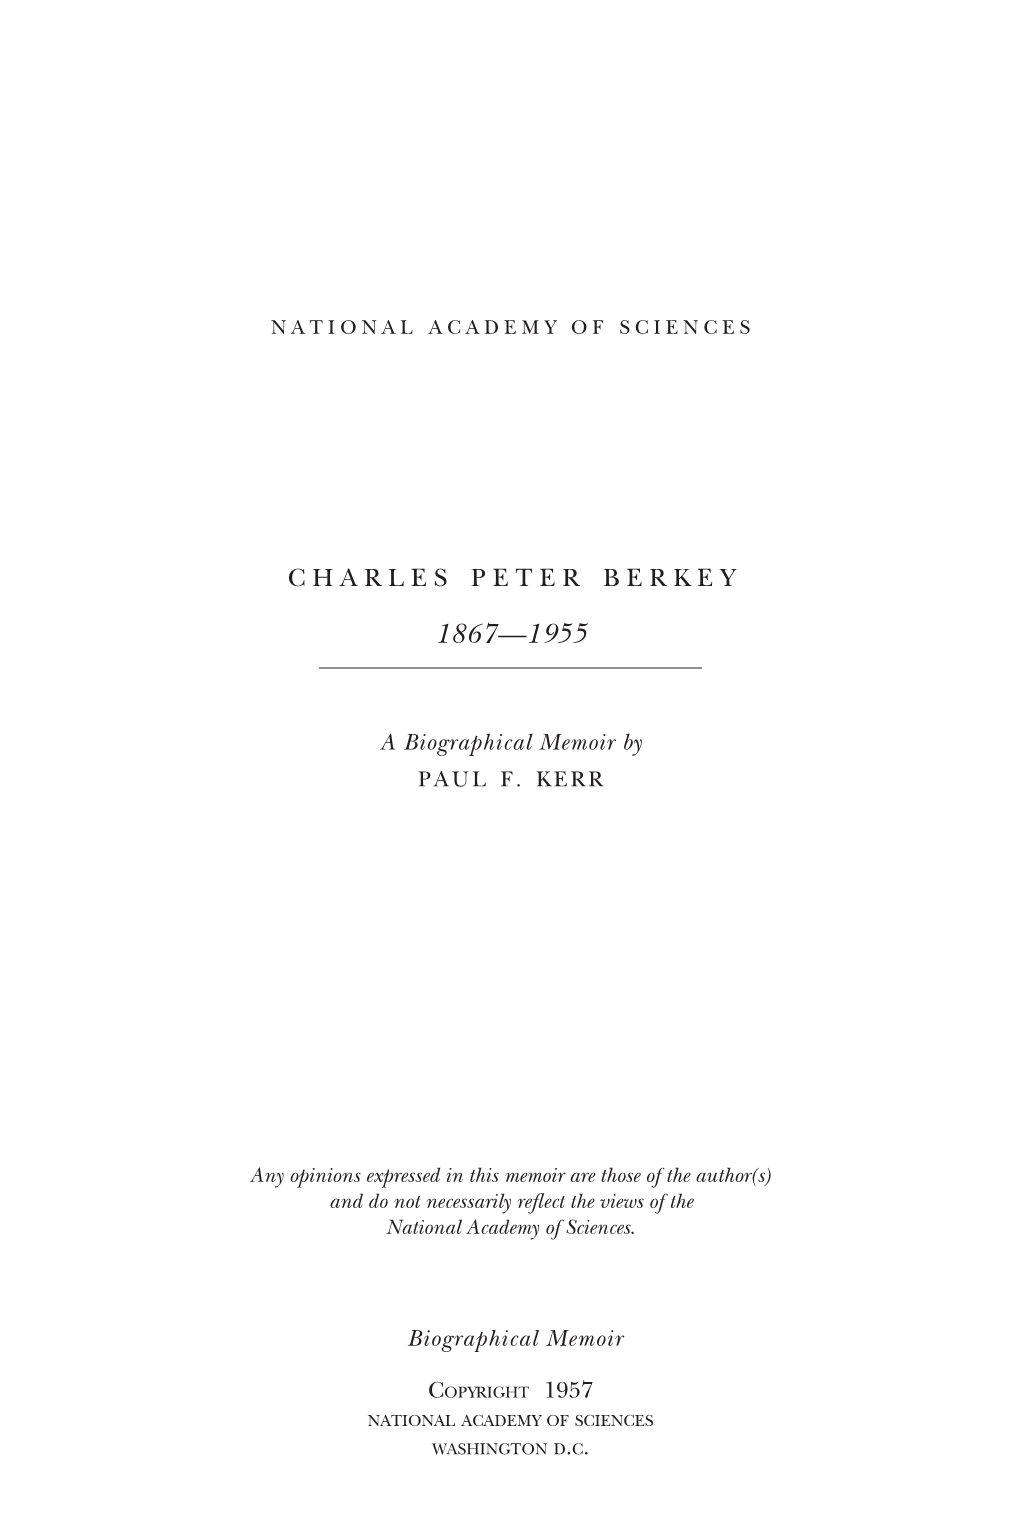 Charles Peter Berkey, 1867-1955: a Biographical Memoir